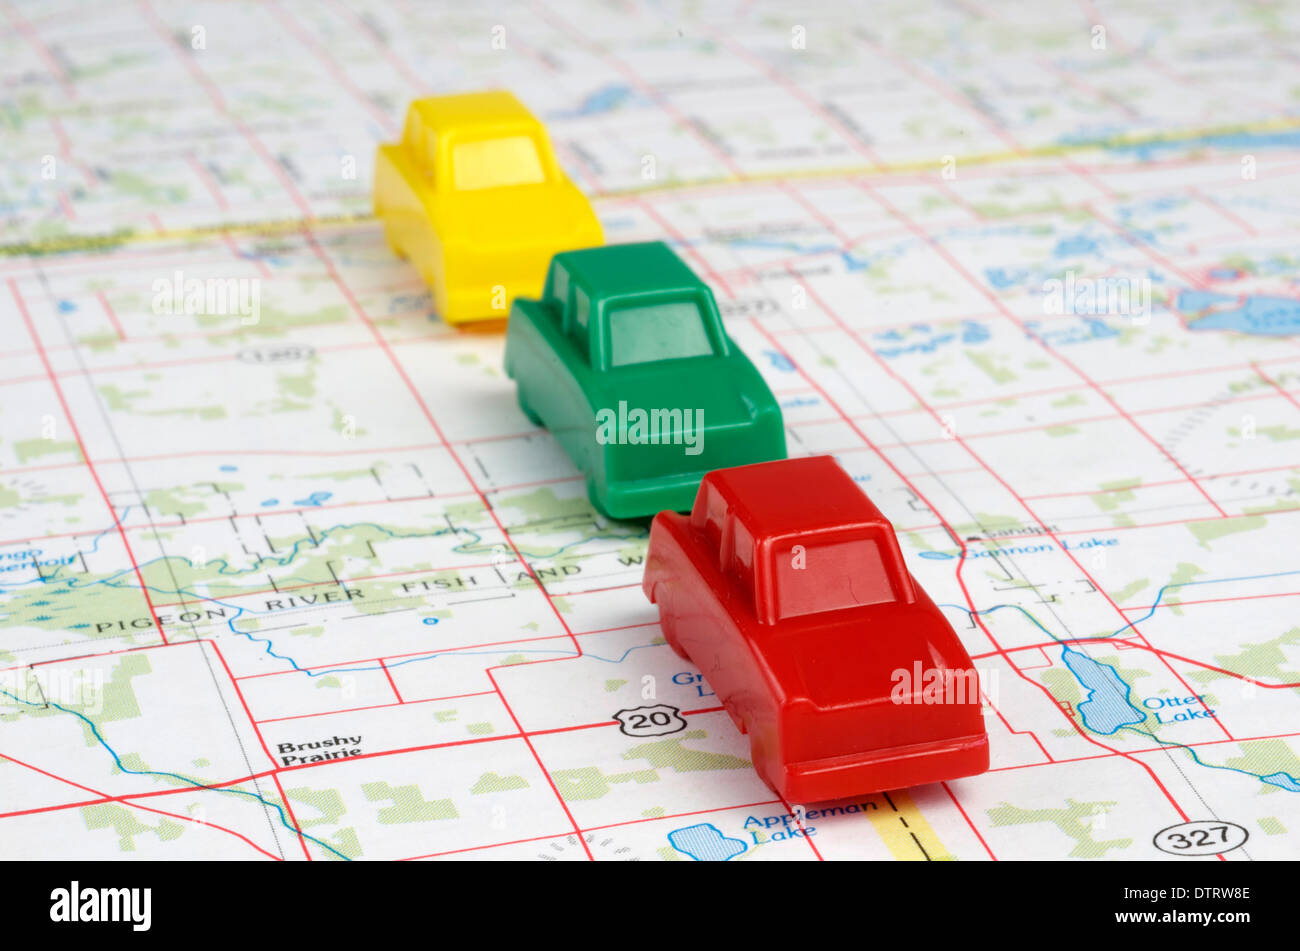 Rouge,jaune,vert voitures miniatures sont le déplacement en marche avant sur une carte. Banque D'Images